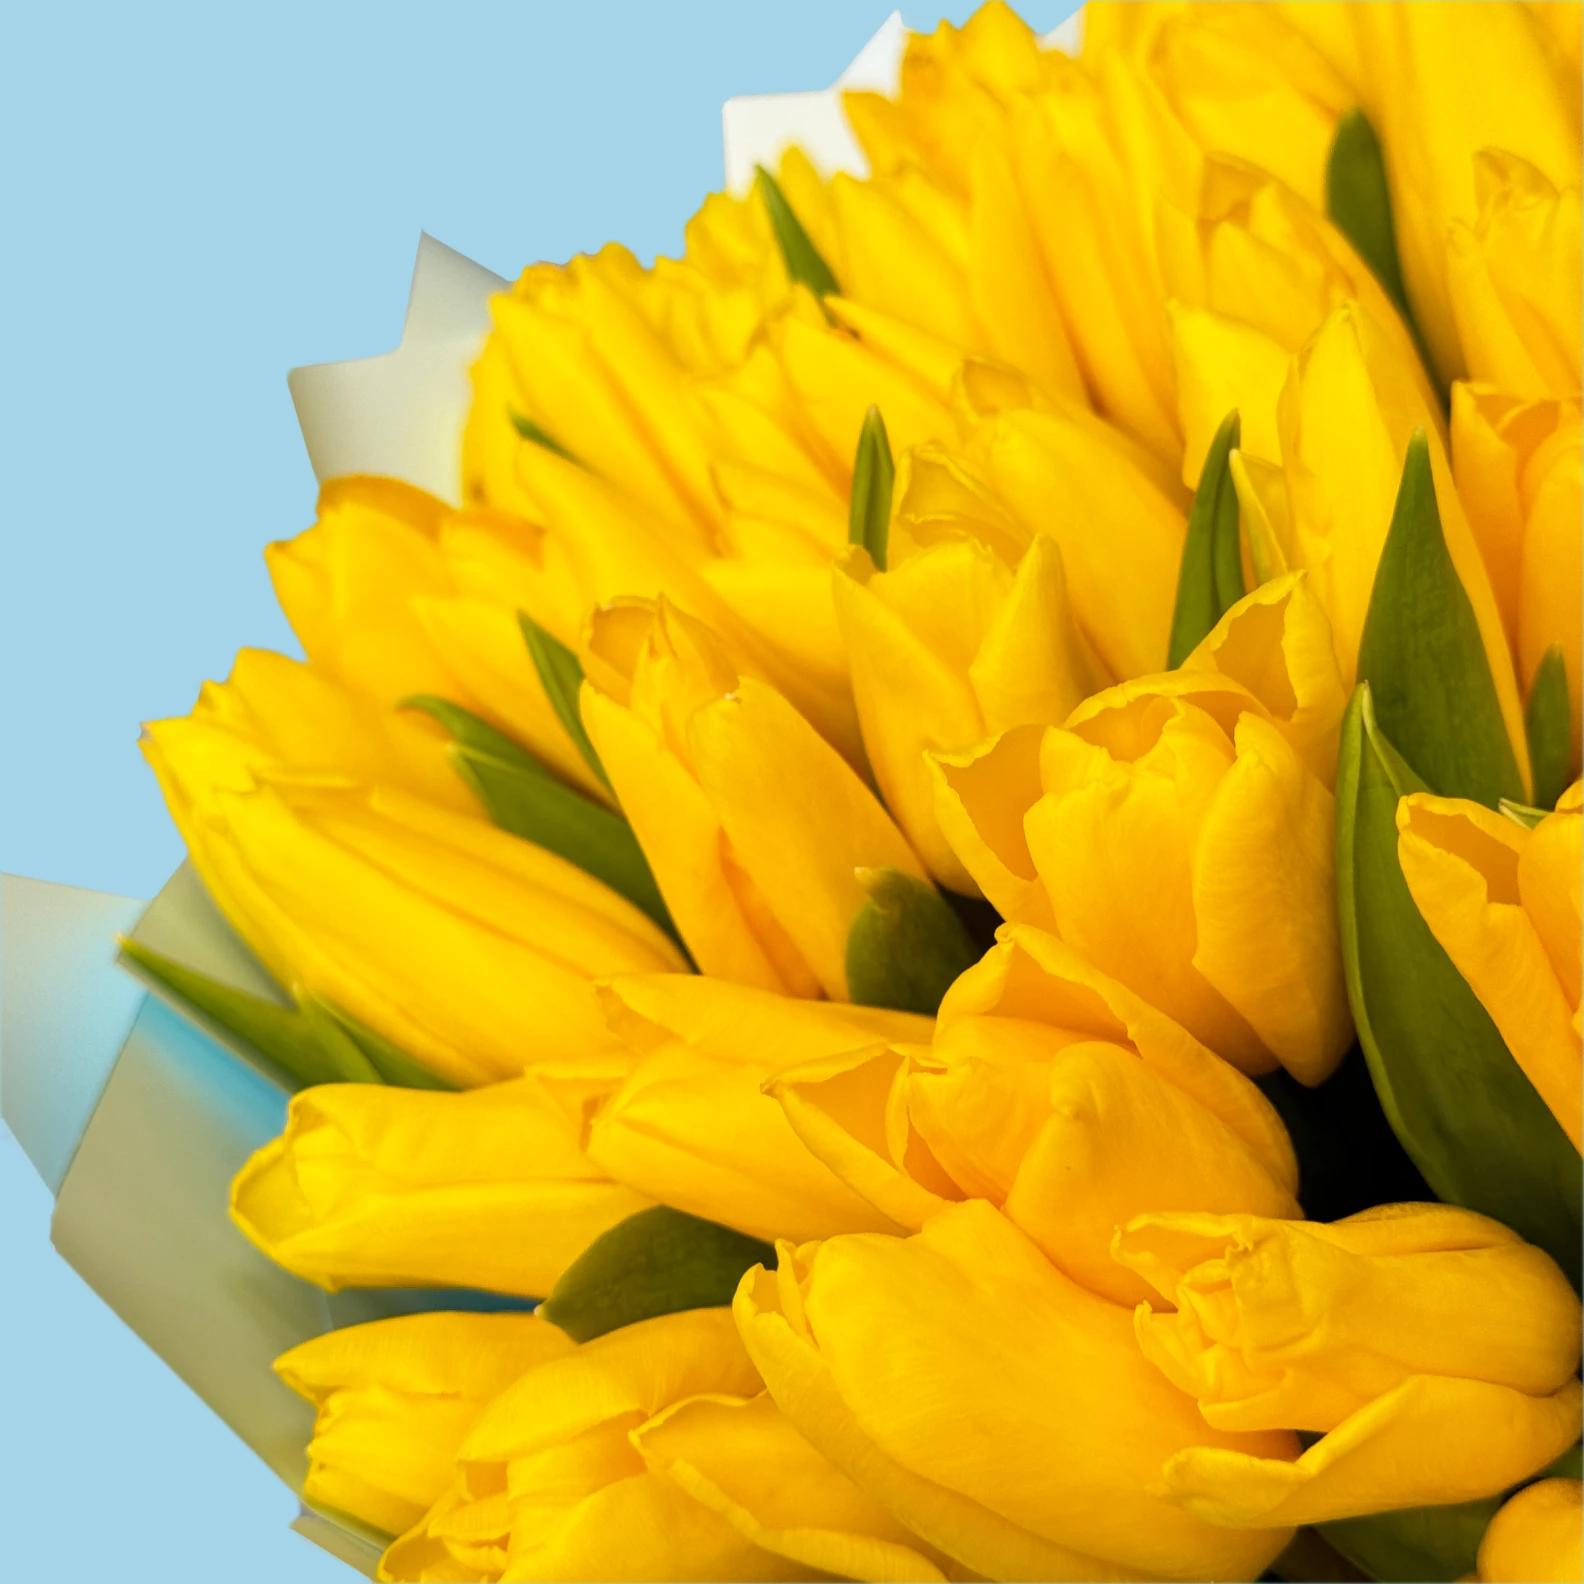 100 Yellow Tulips - image №3